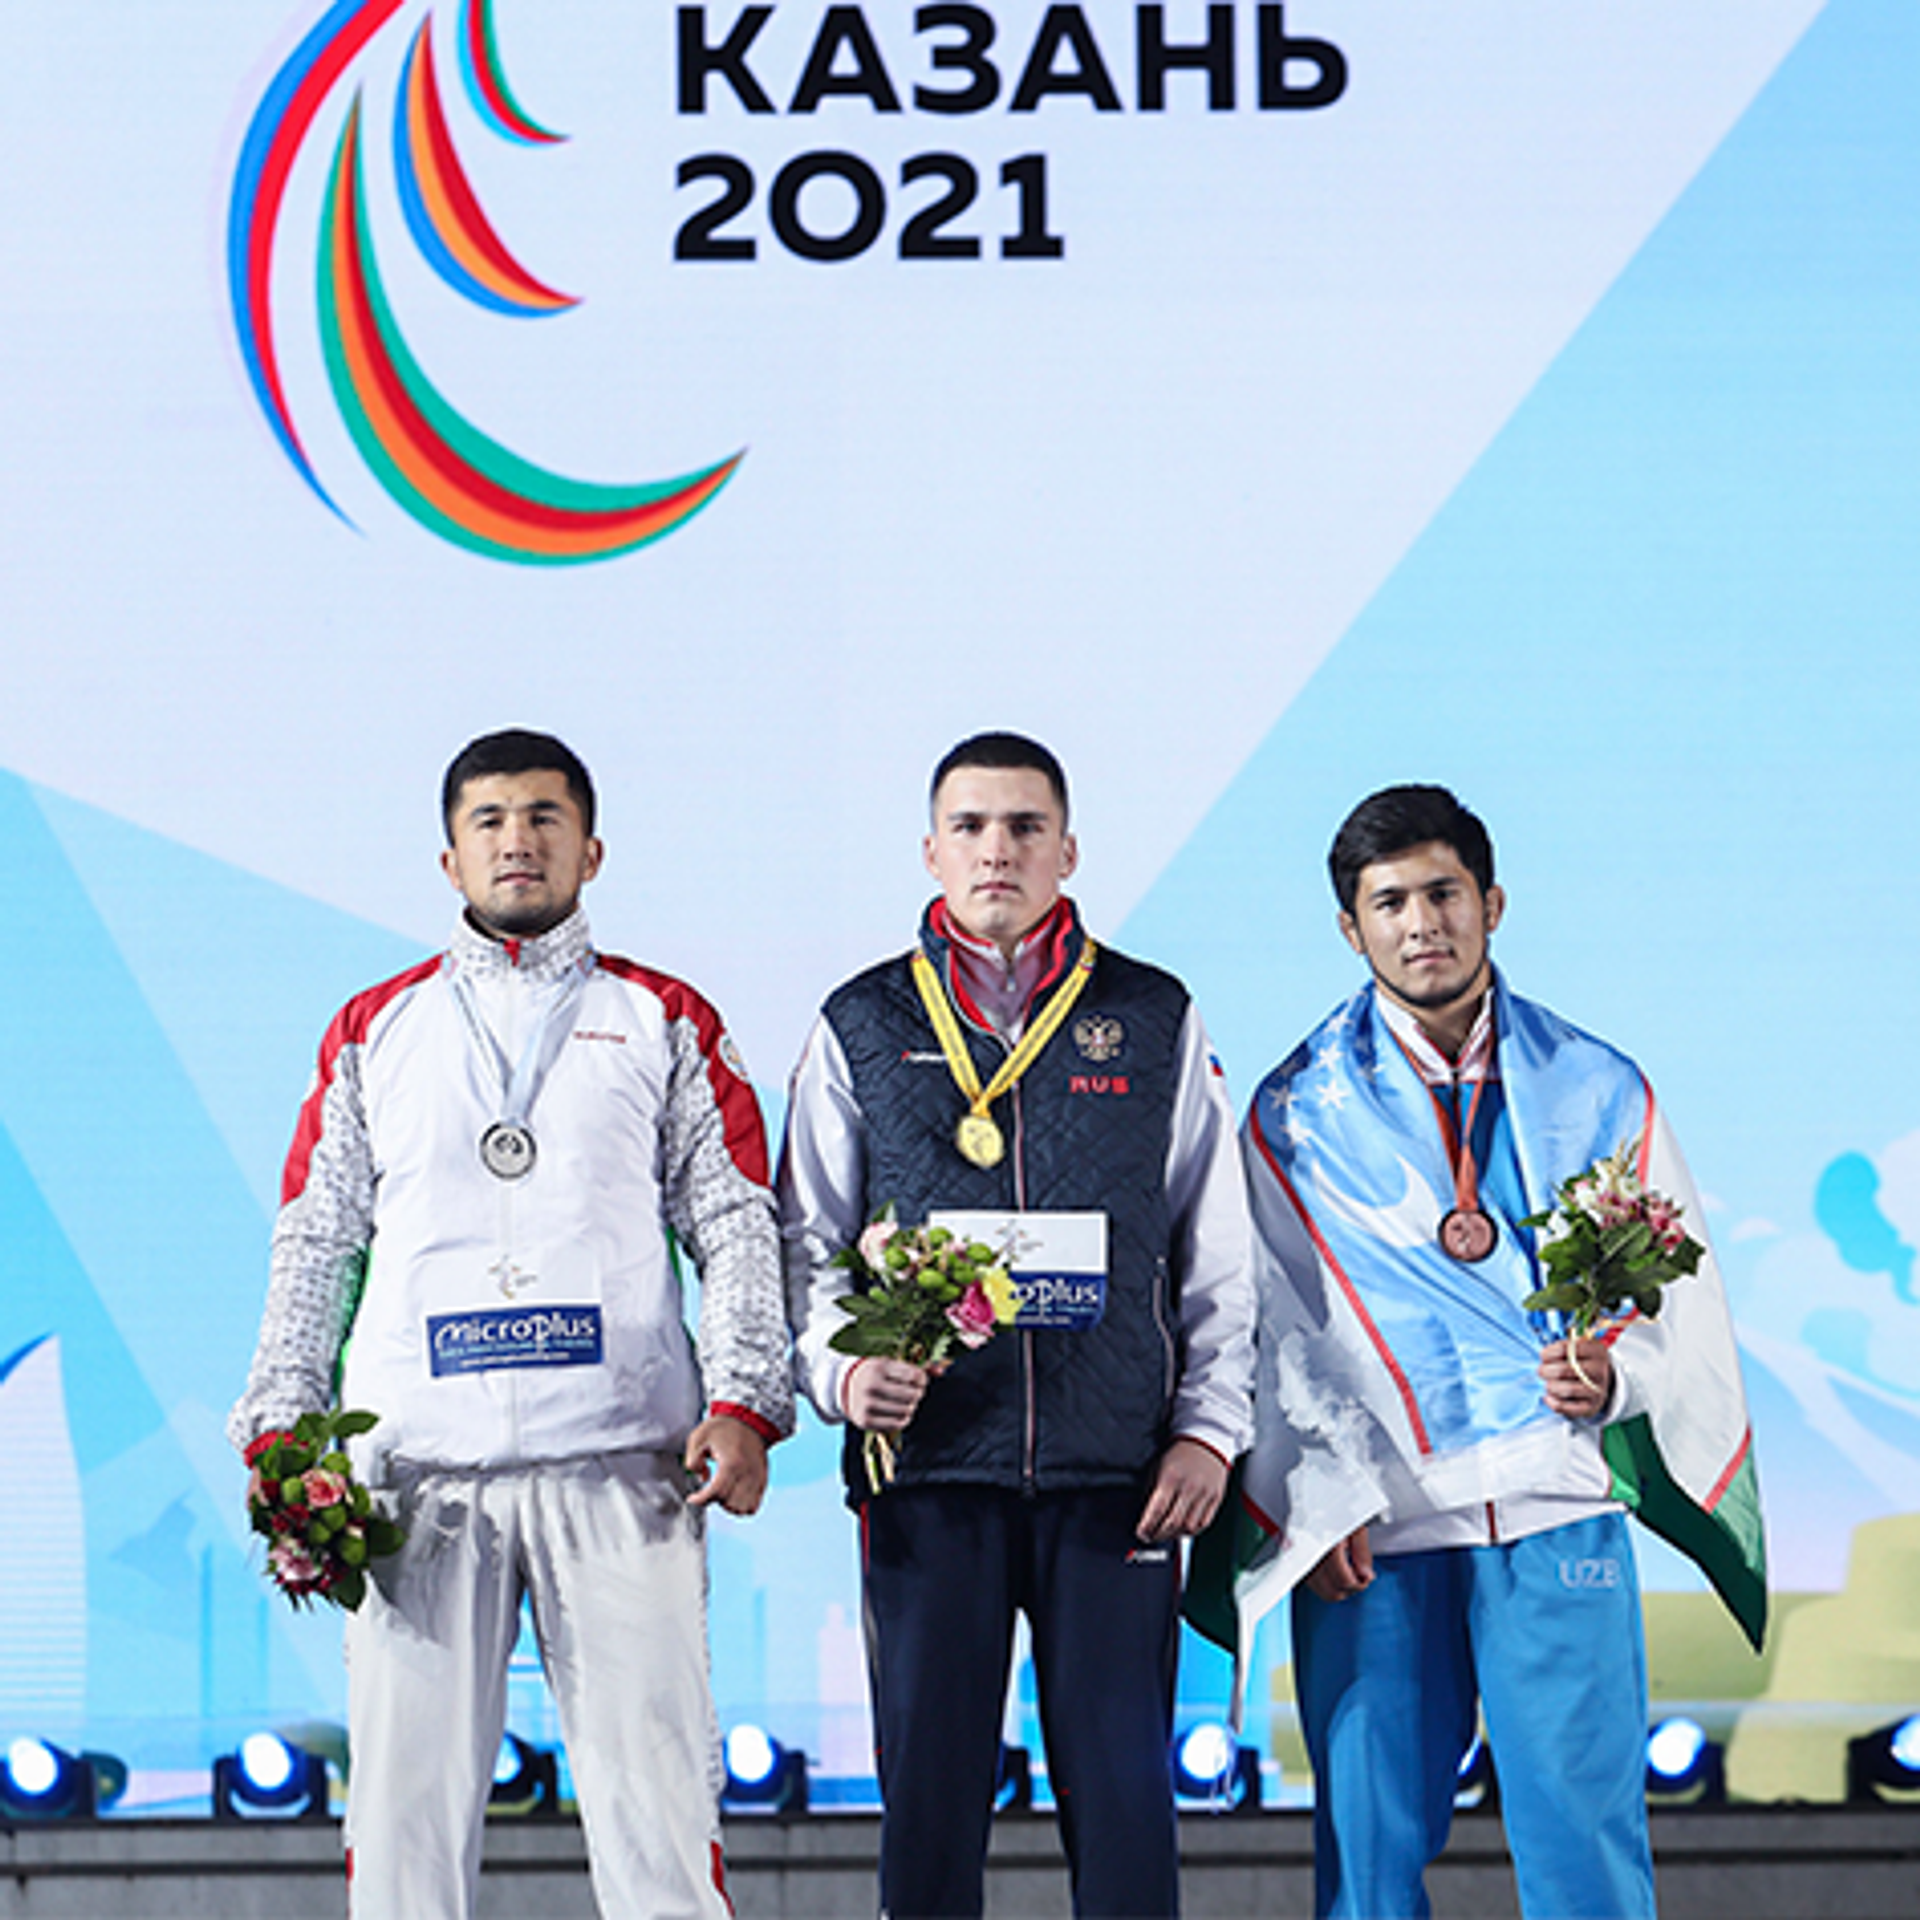 Сколько стран на играх в казани. Спортсмены Таджикистана. Таджикские спортсмены. Таджик спортсмен. Олимпийский комитет Таджикистана.